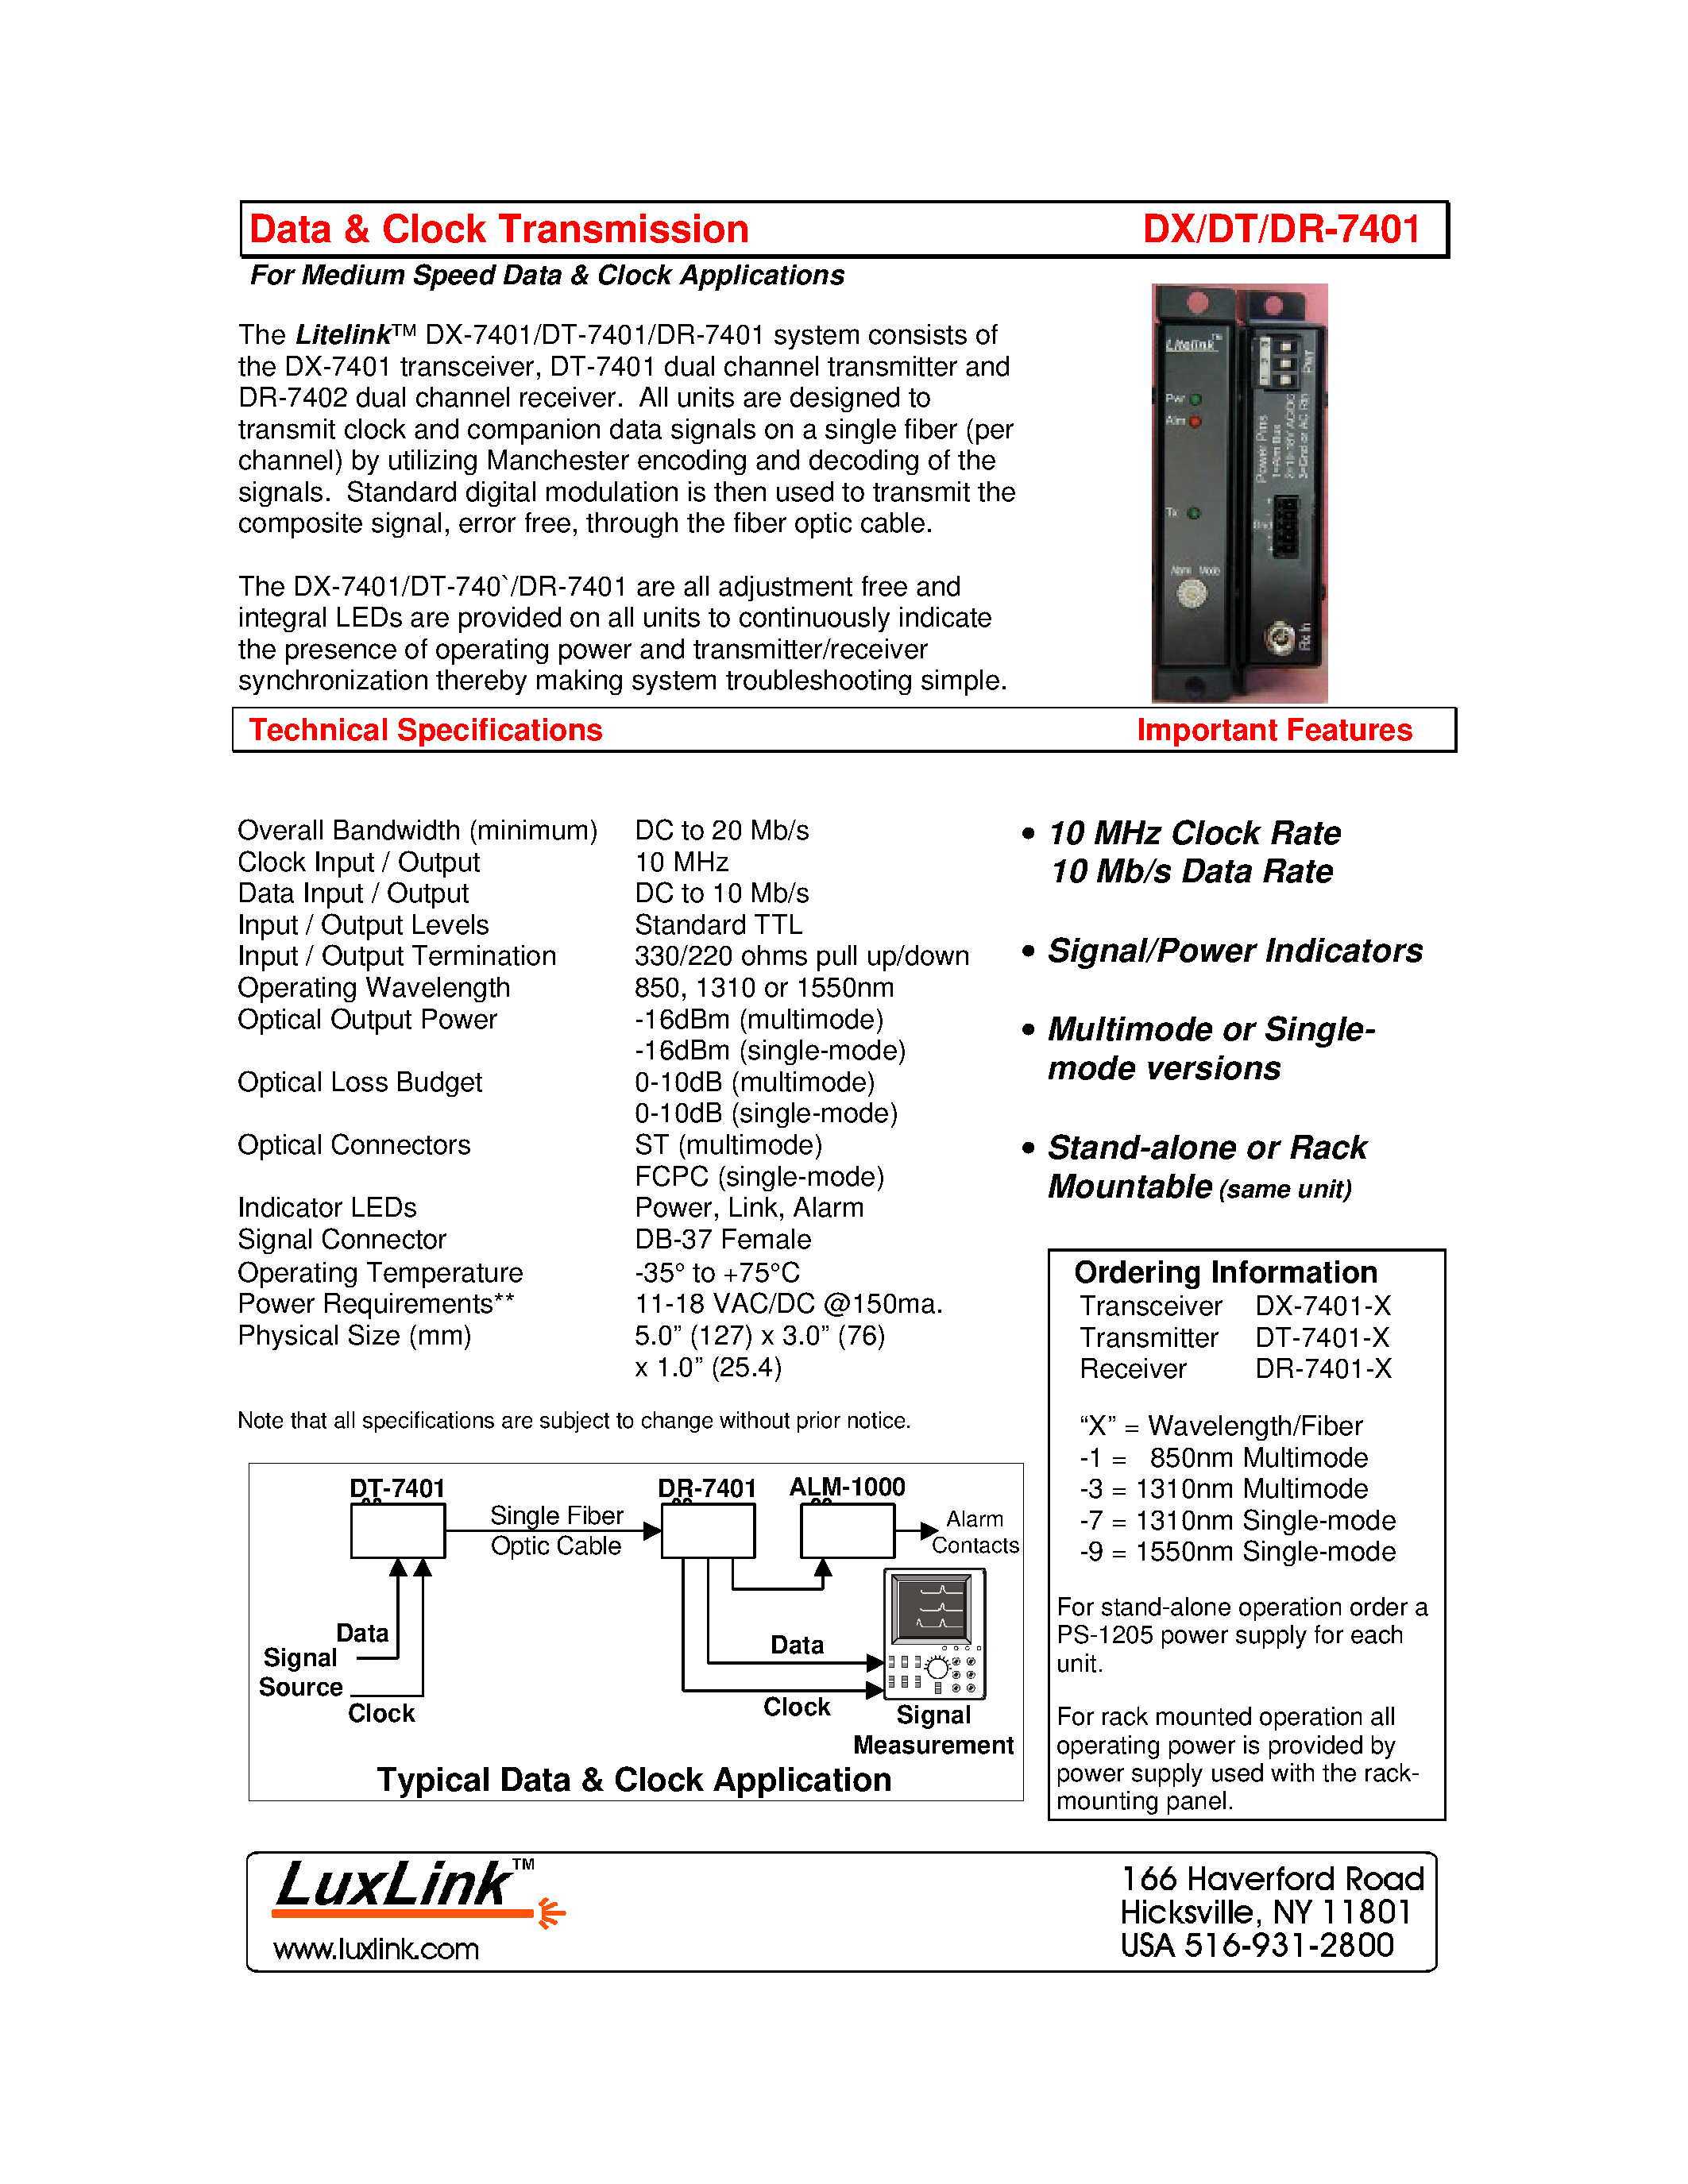 Даташит DT-7401-X - DATA & CLOCK TRANSMISSION страница 1